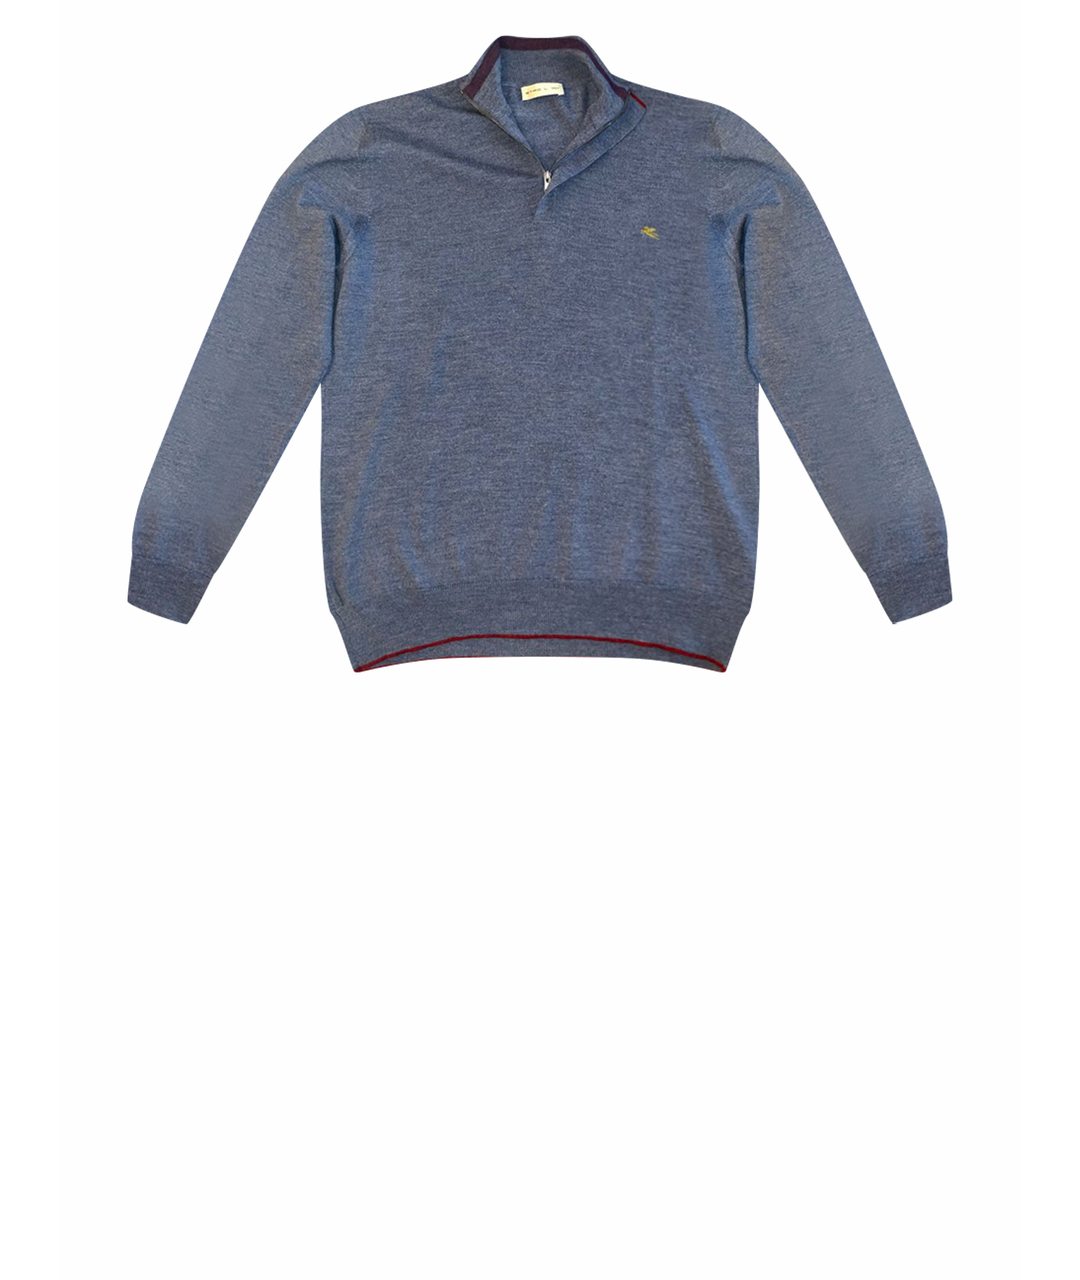 ETRO Синий кашемировый джемпер / свитер, фото 1